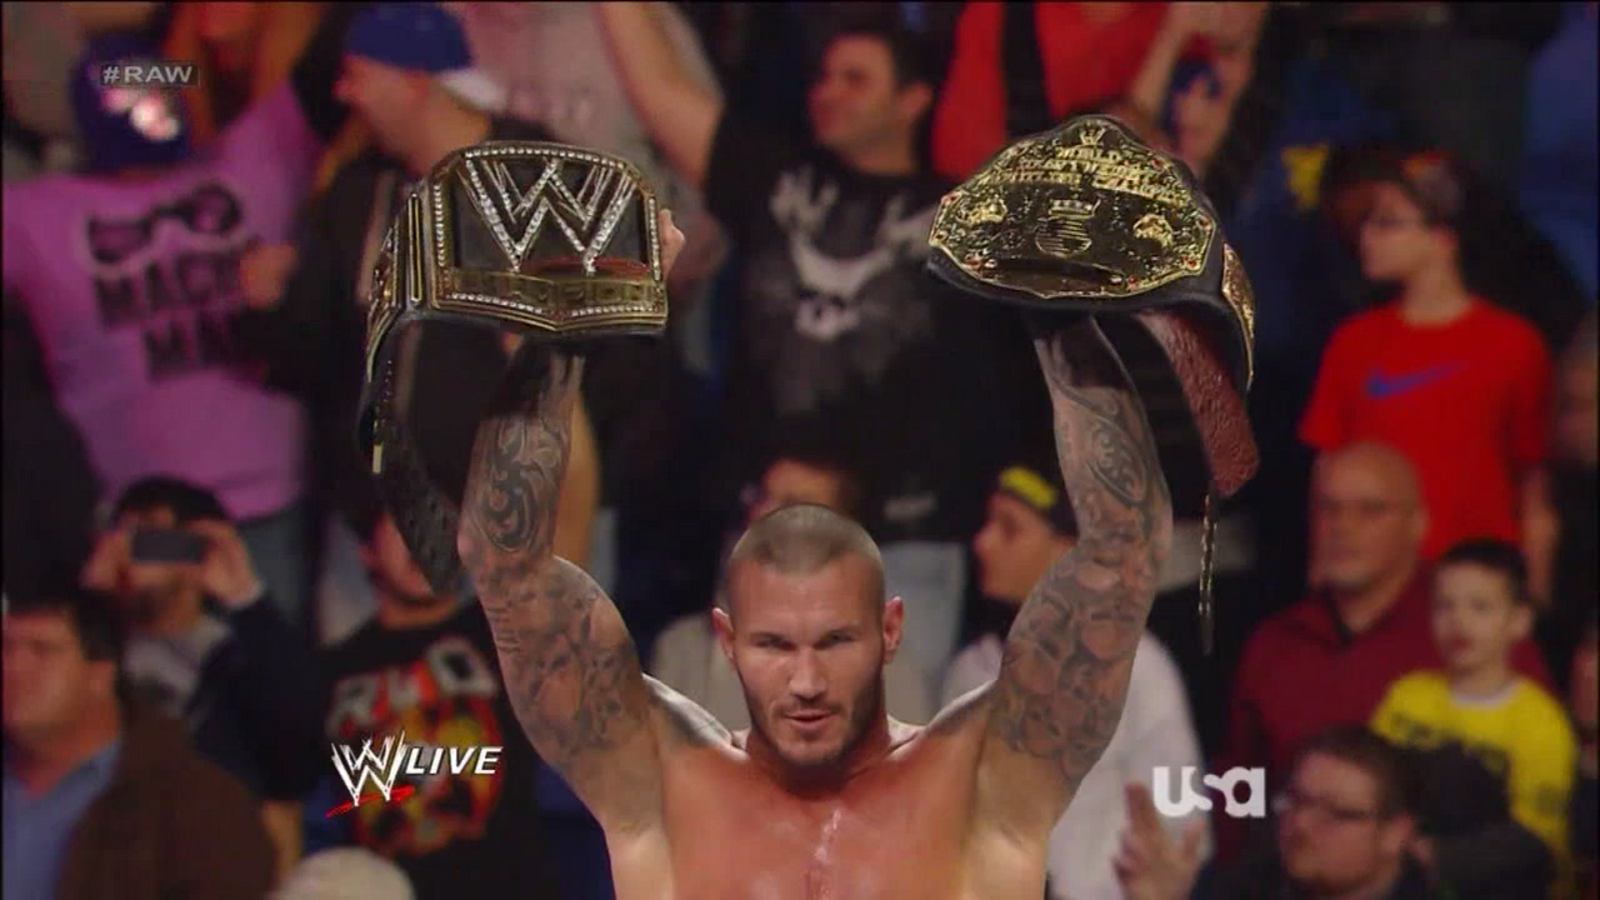 Randy Orton Hd Wallpaper - Randy Orton Unified Champion - HD Wallpaper 